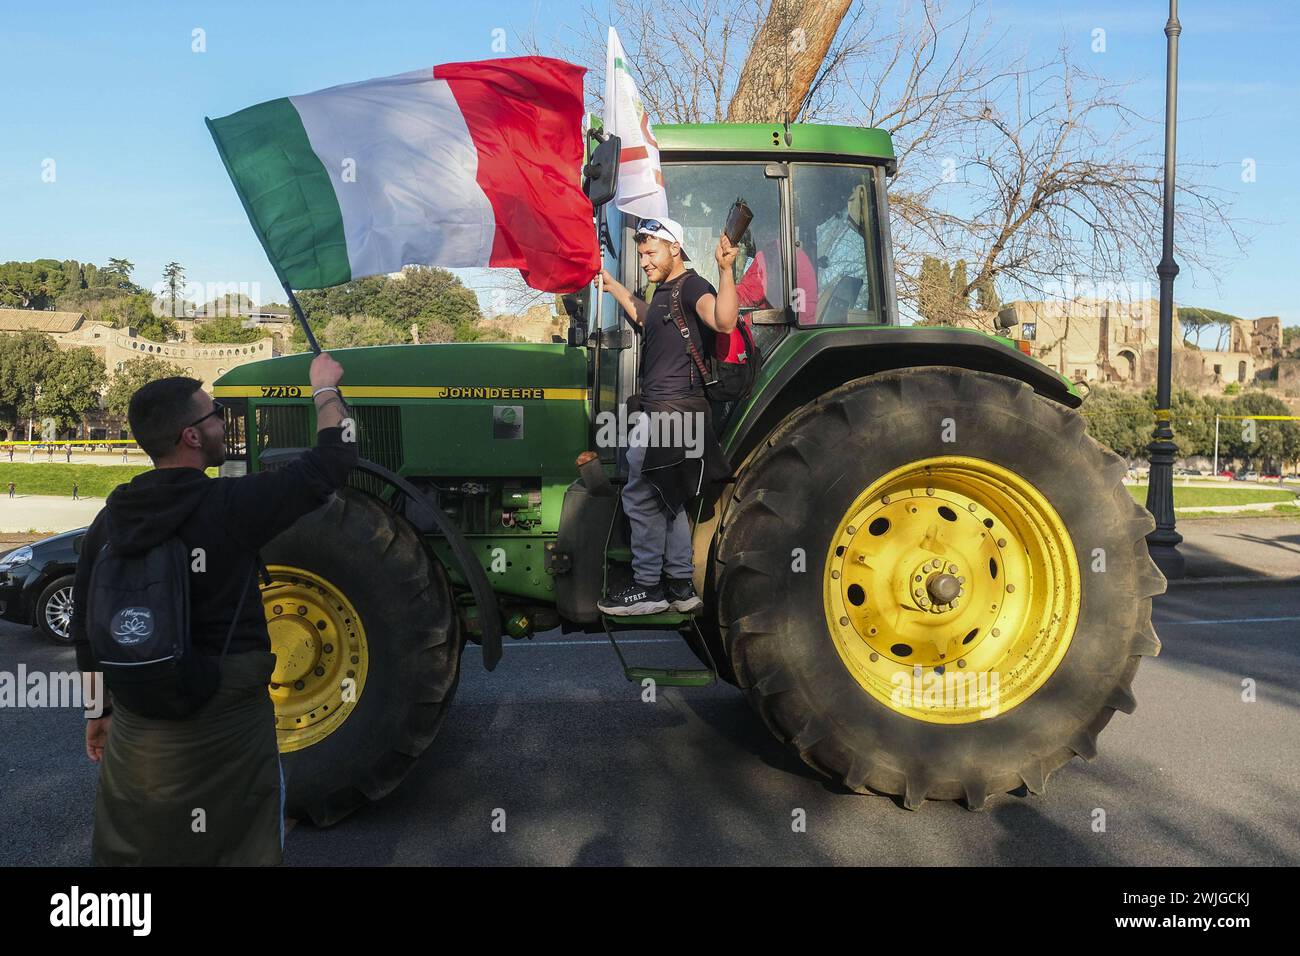 Notizie - dimostrazioni degli agricoltori a Roma gli agricoltori organizzano dimostrazioni in tutta Italia per settimane per chiedere tasse più basse sul carburante, prezzi migliori per i loro prodotti, e un allentamento delle normative ambientali dell'UE che, secondo loro, rendono più difficile competere con prodotti stranieri meno costosi. Oggi, 15 febbraio 2024, si sono riuniti in una manifestazione nazionale a roma al circo massimo e al campidoglio.& XA Roma Italia Copyright: XAntonioxBalascox/xLiveMediax LPN_1237672 Foto Stock